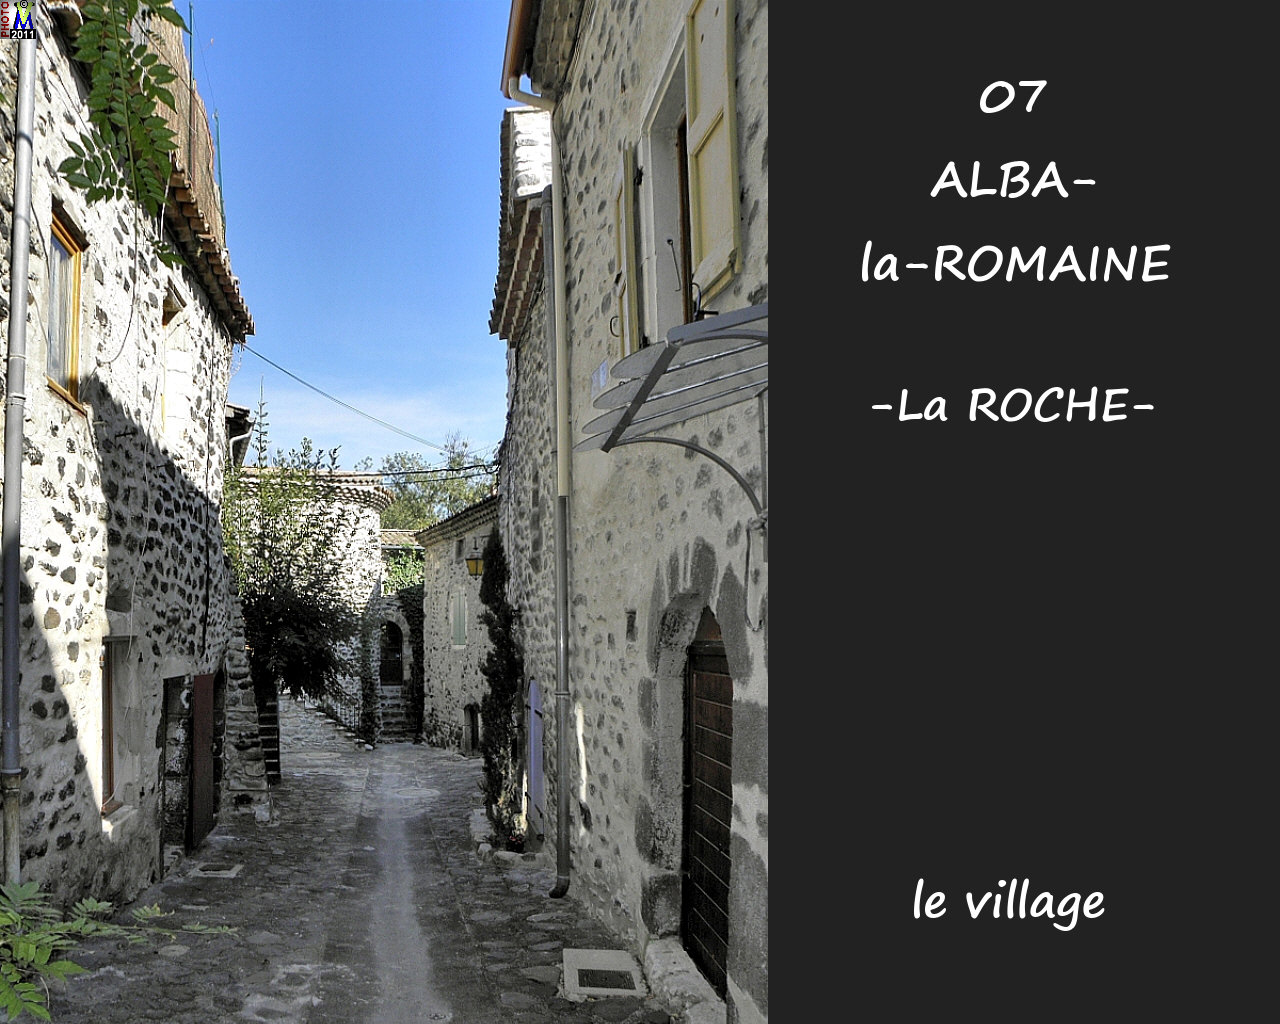 07ALBA-ROMAINEzROCHE_village_102.jpg